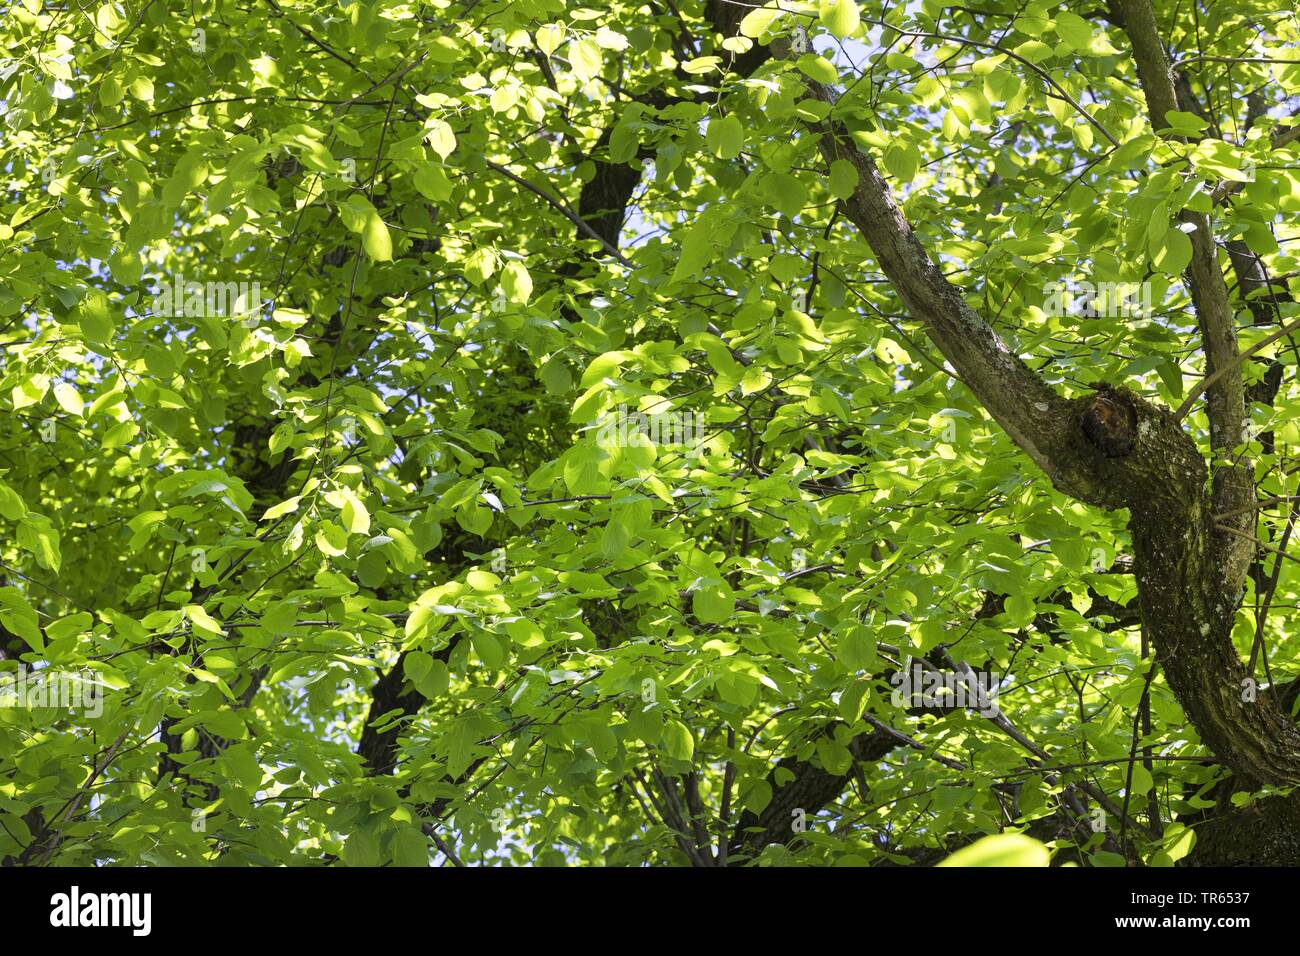 Tilleul à grandes feuilles, tilleul (Tilia platyphyllos), vue de la couronne d'en bas, Allemagne Banque D'Images